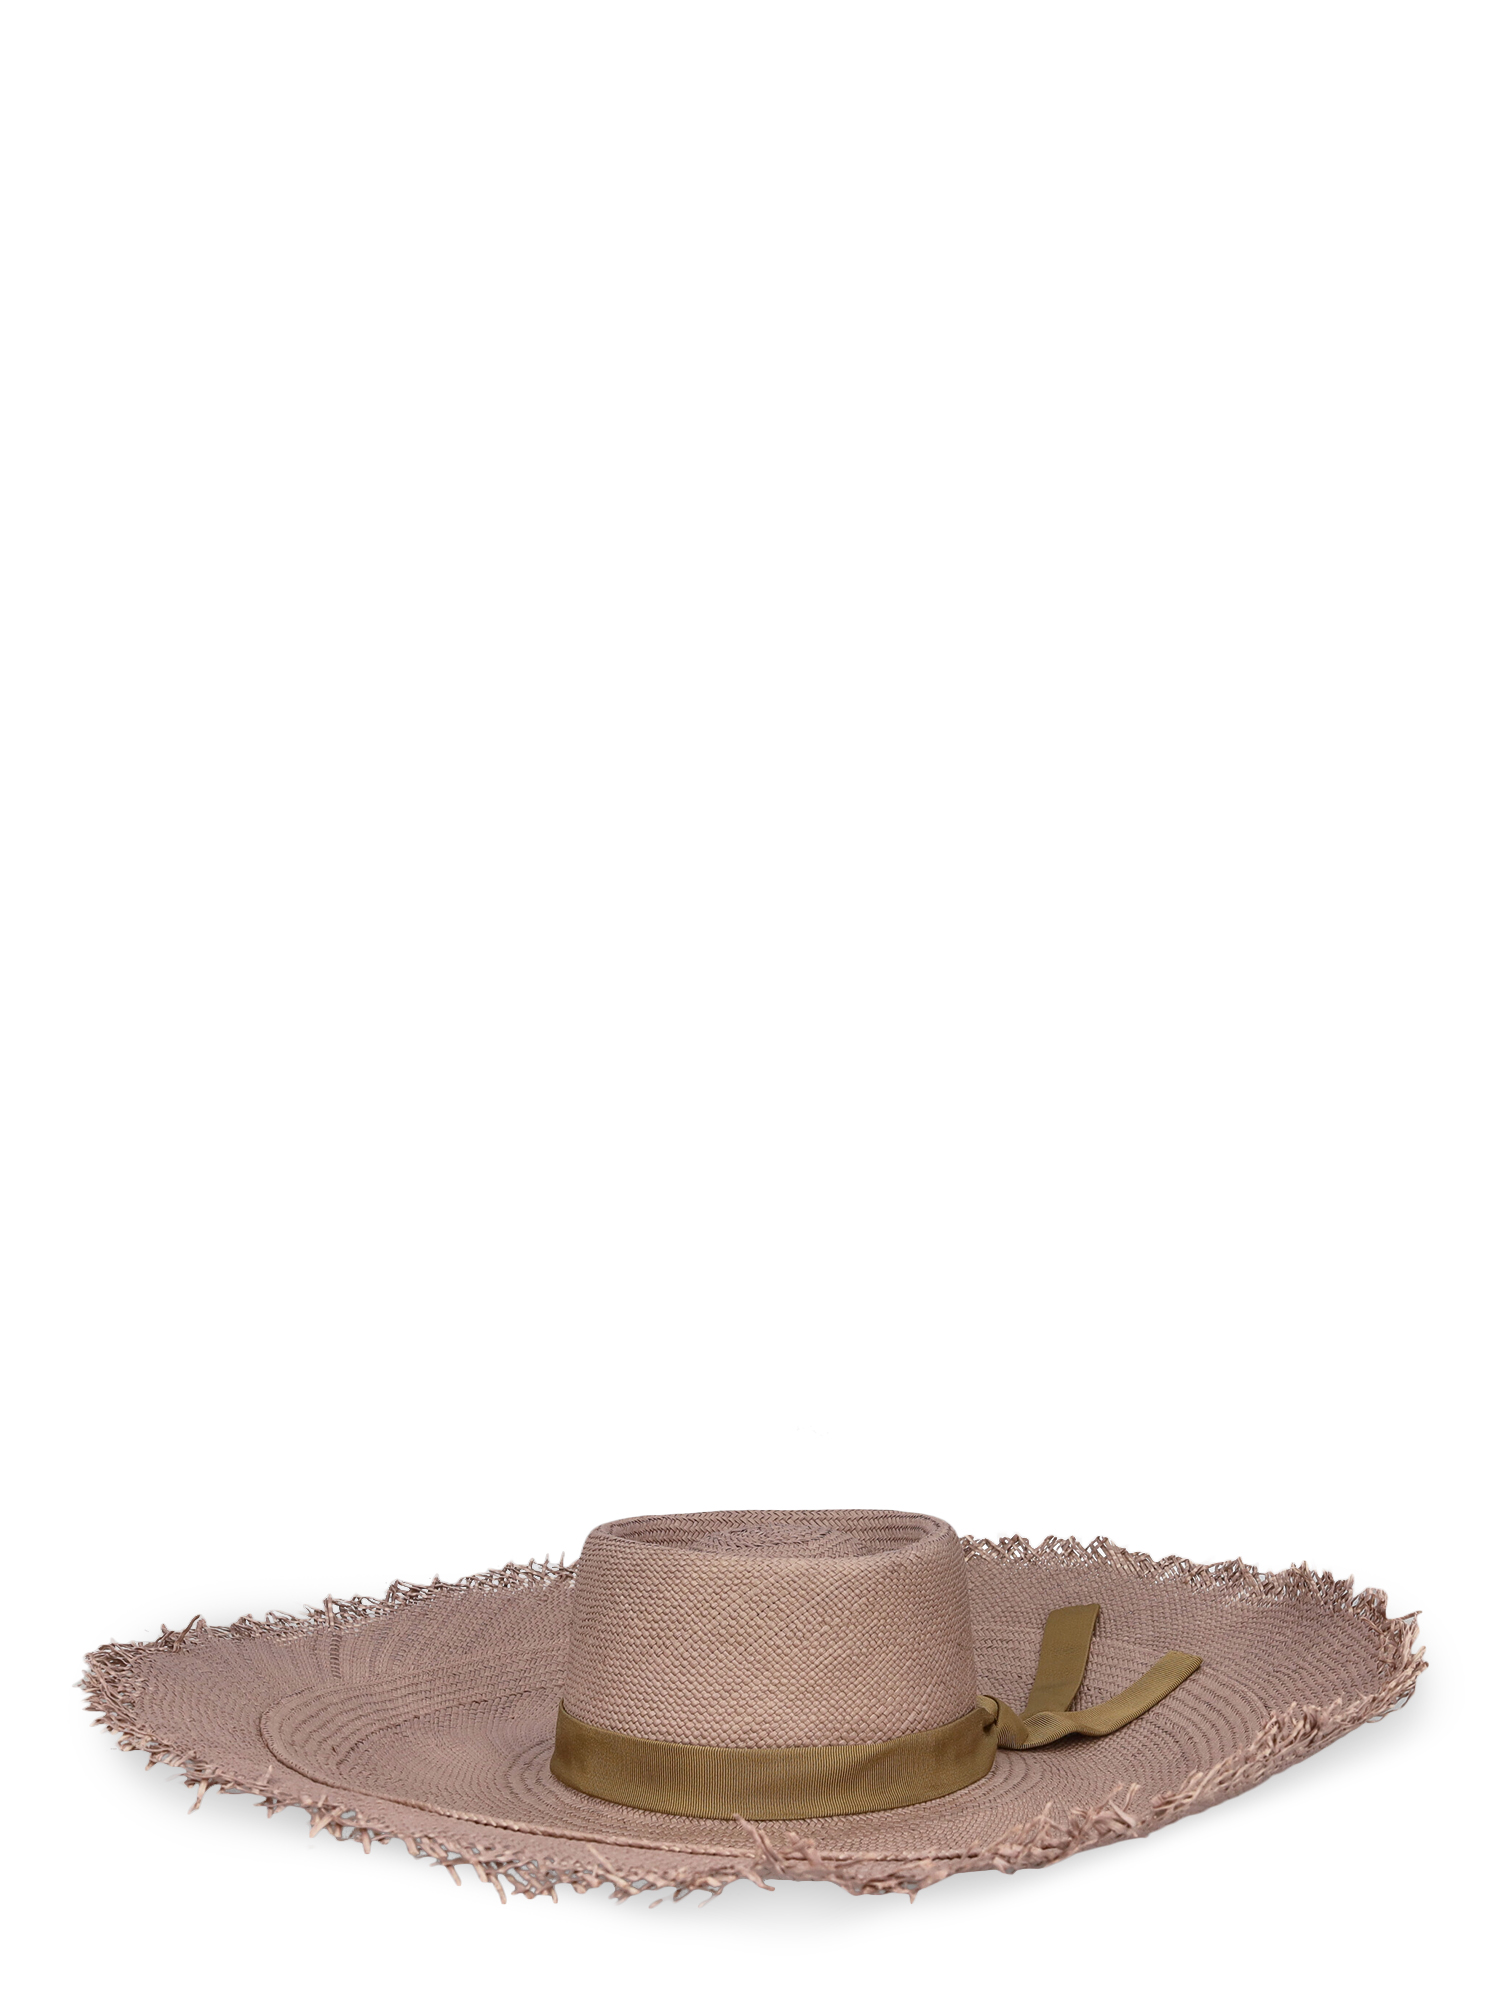 Chapeaux Pour Femme - Zimmermann - En Eco-Friendly Fabric Pink - Taille:  -